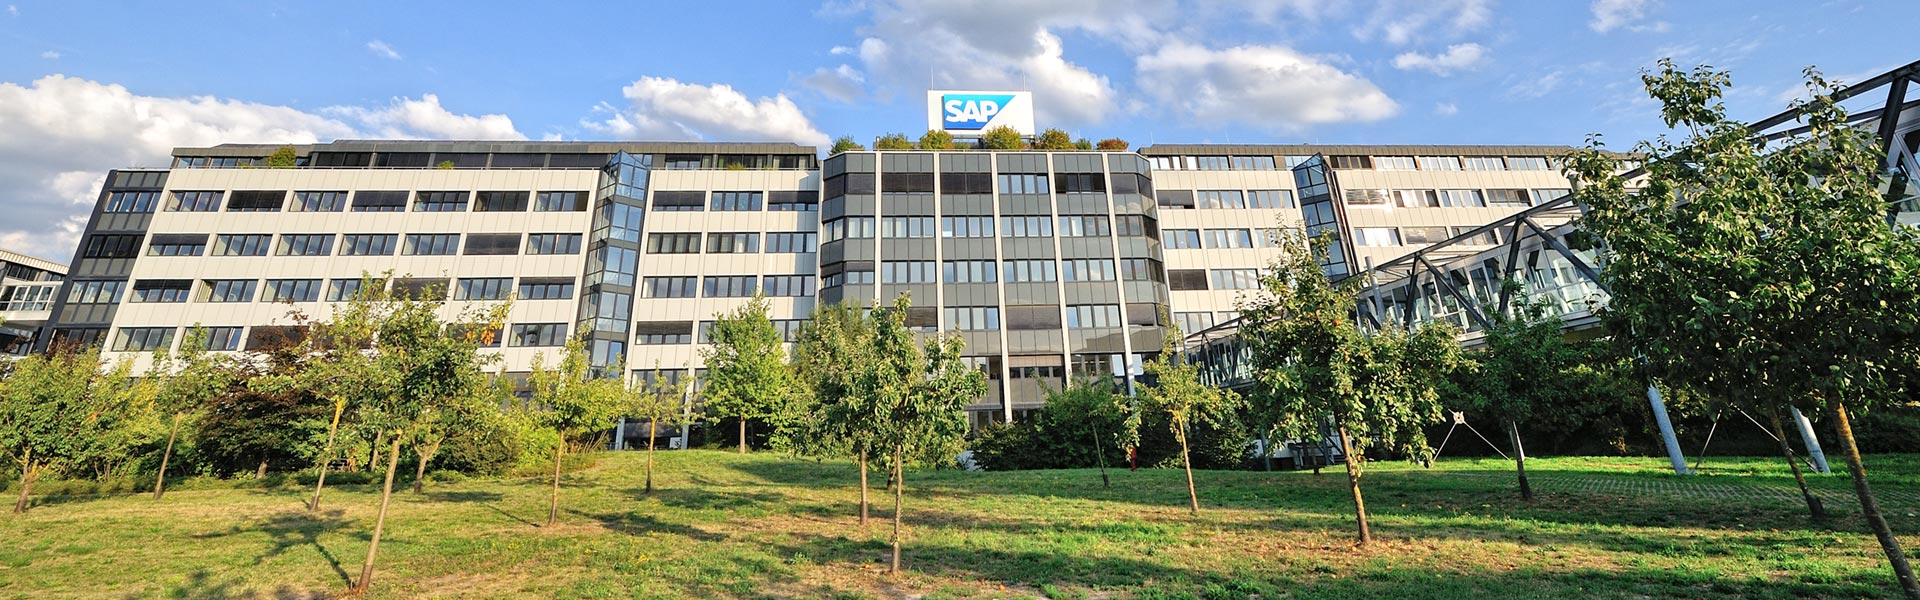 SAP-Aufsichtsrat verlängert die Vorstandsmandate von Julia White und Scott Russell – Sabine Bendiek beendet ihr Mandat zum 31. Dezember 2023